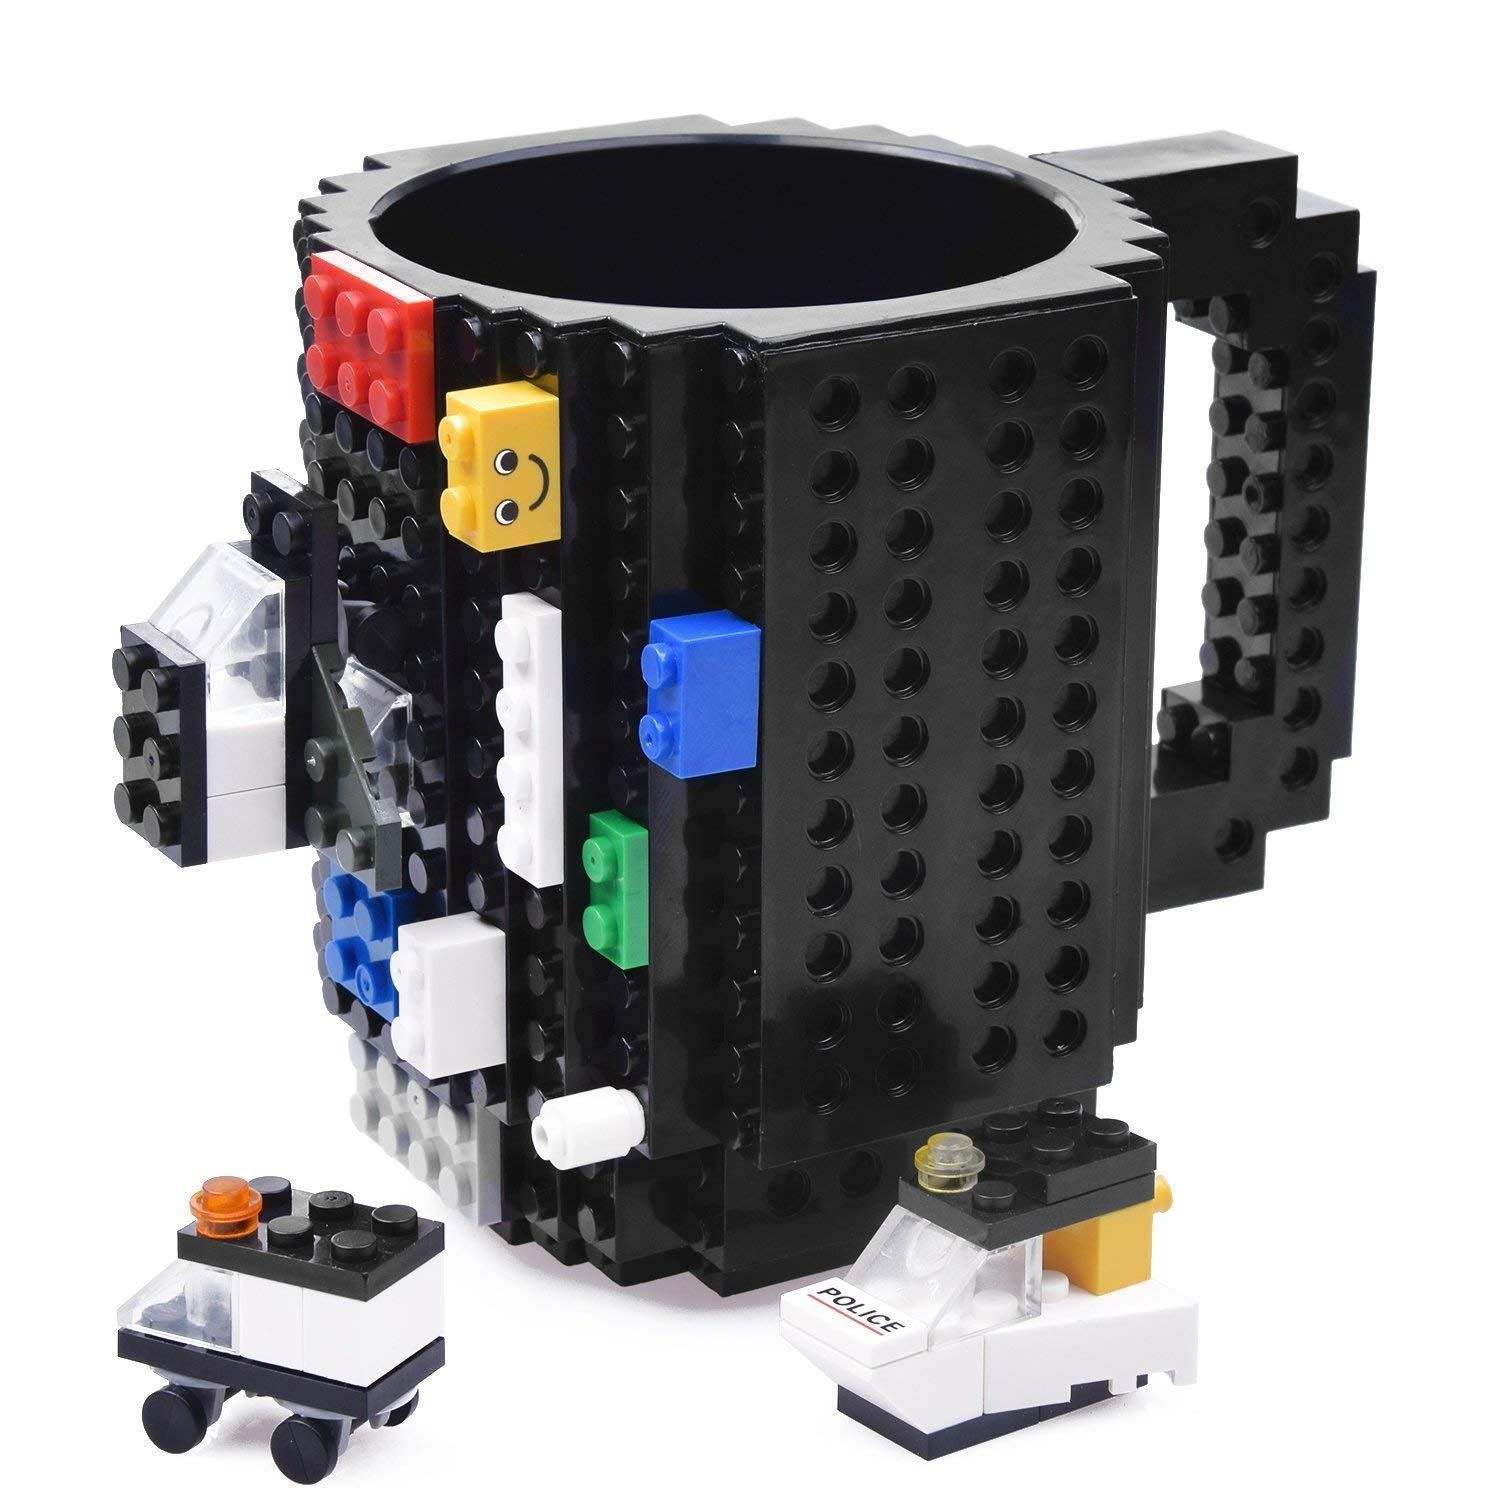 Promocja Kreatywny Kubek Lego + Zestaw Klocków 350 Ml wyprzedaż przecena